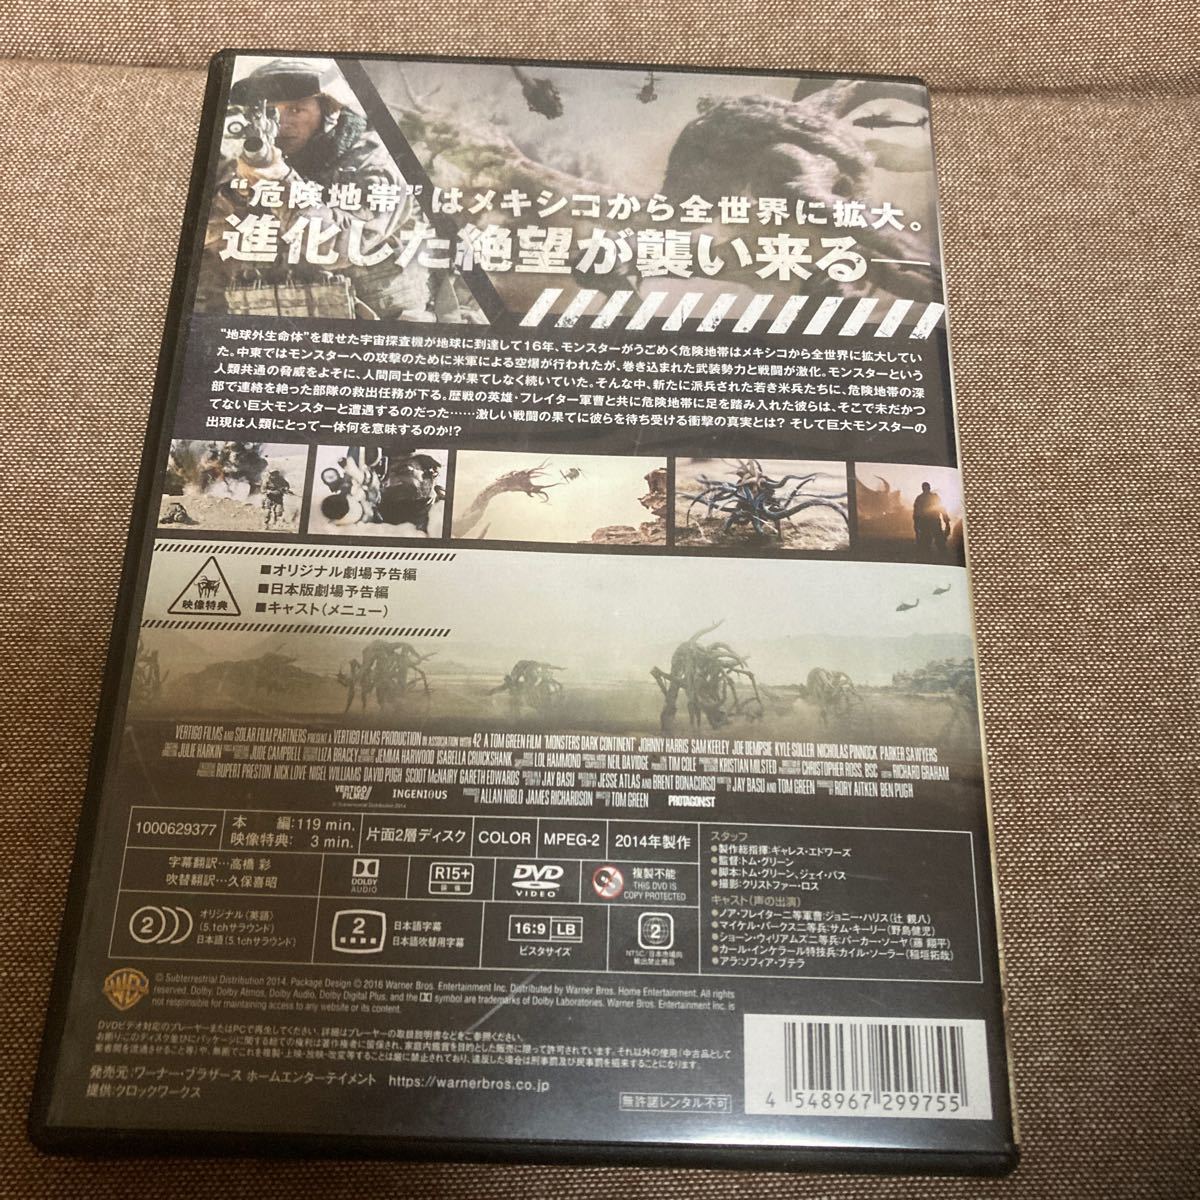 モンスターズ/新種襲来 (出演: サムキーリーパーカーソーヤカイルソーラーソフィアブテラ ジョニーハリス) (DVD)